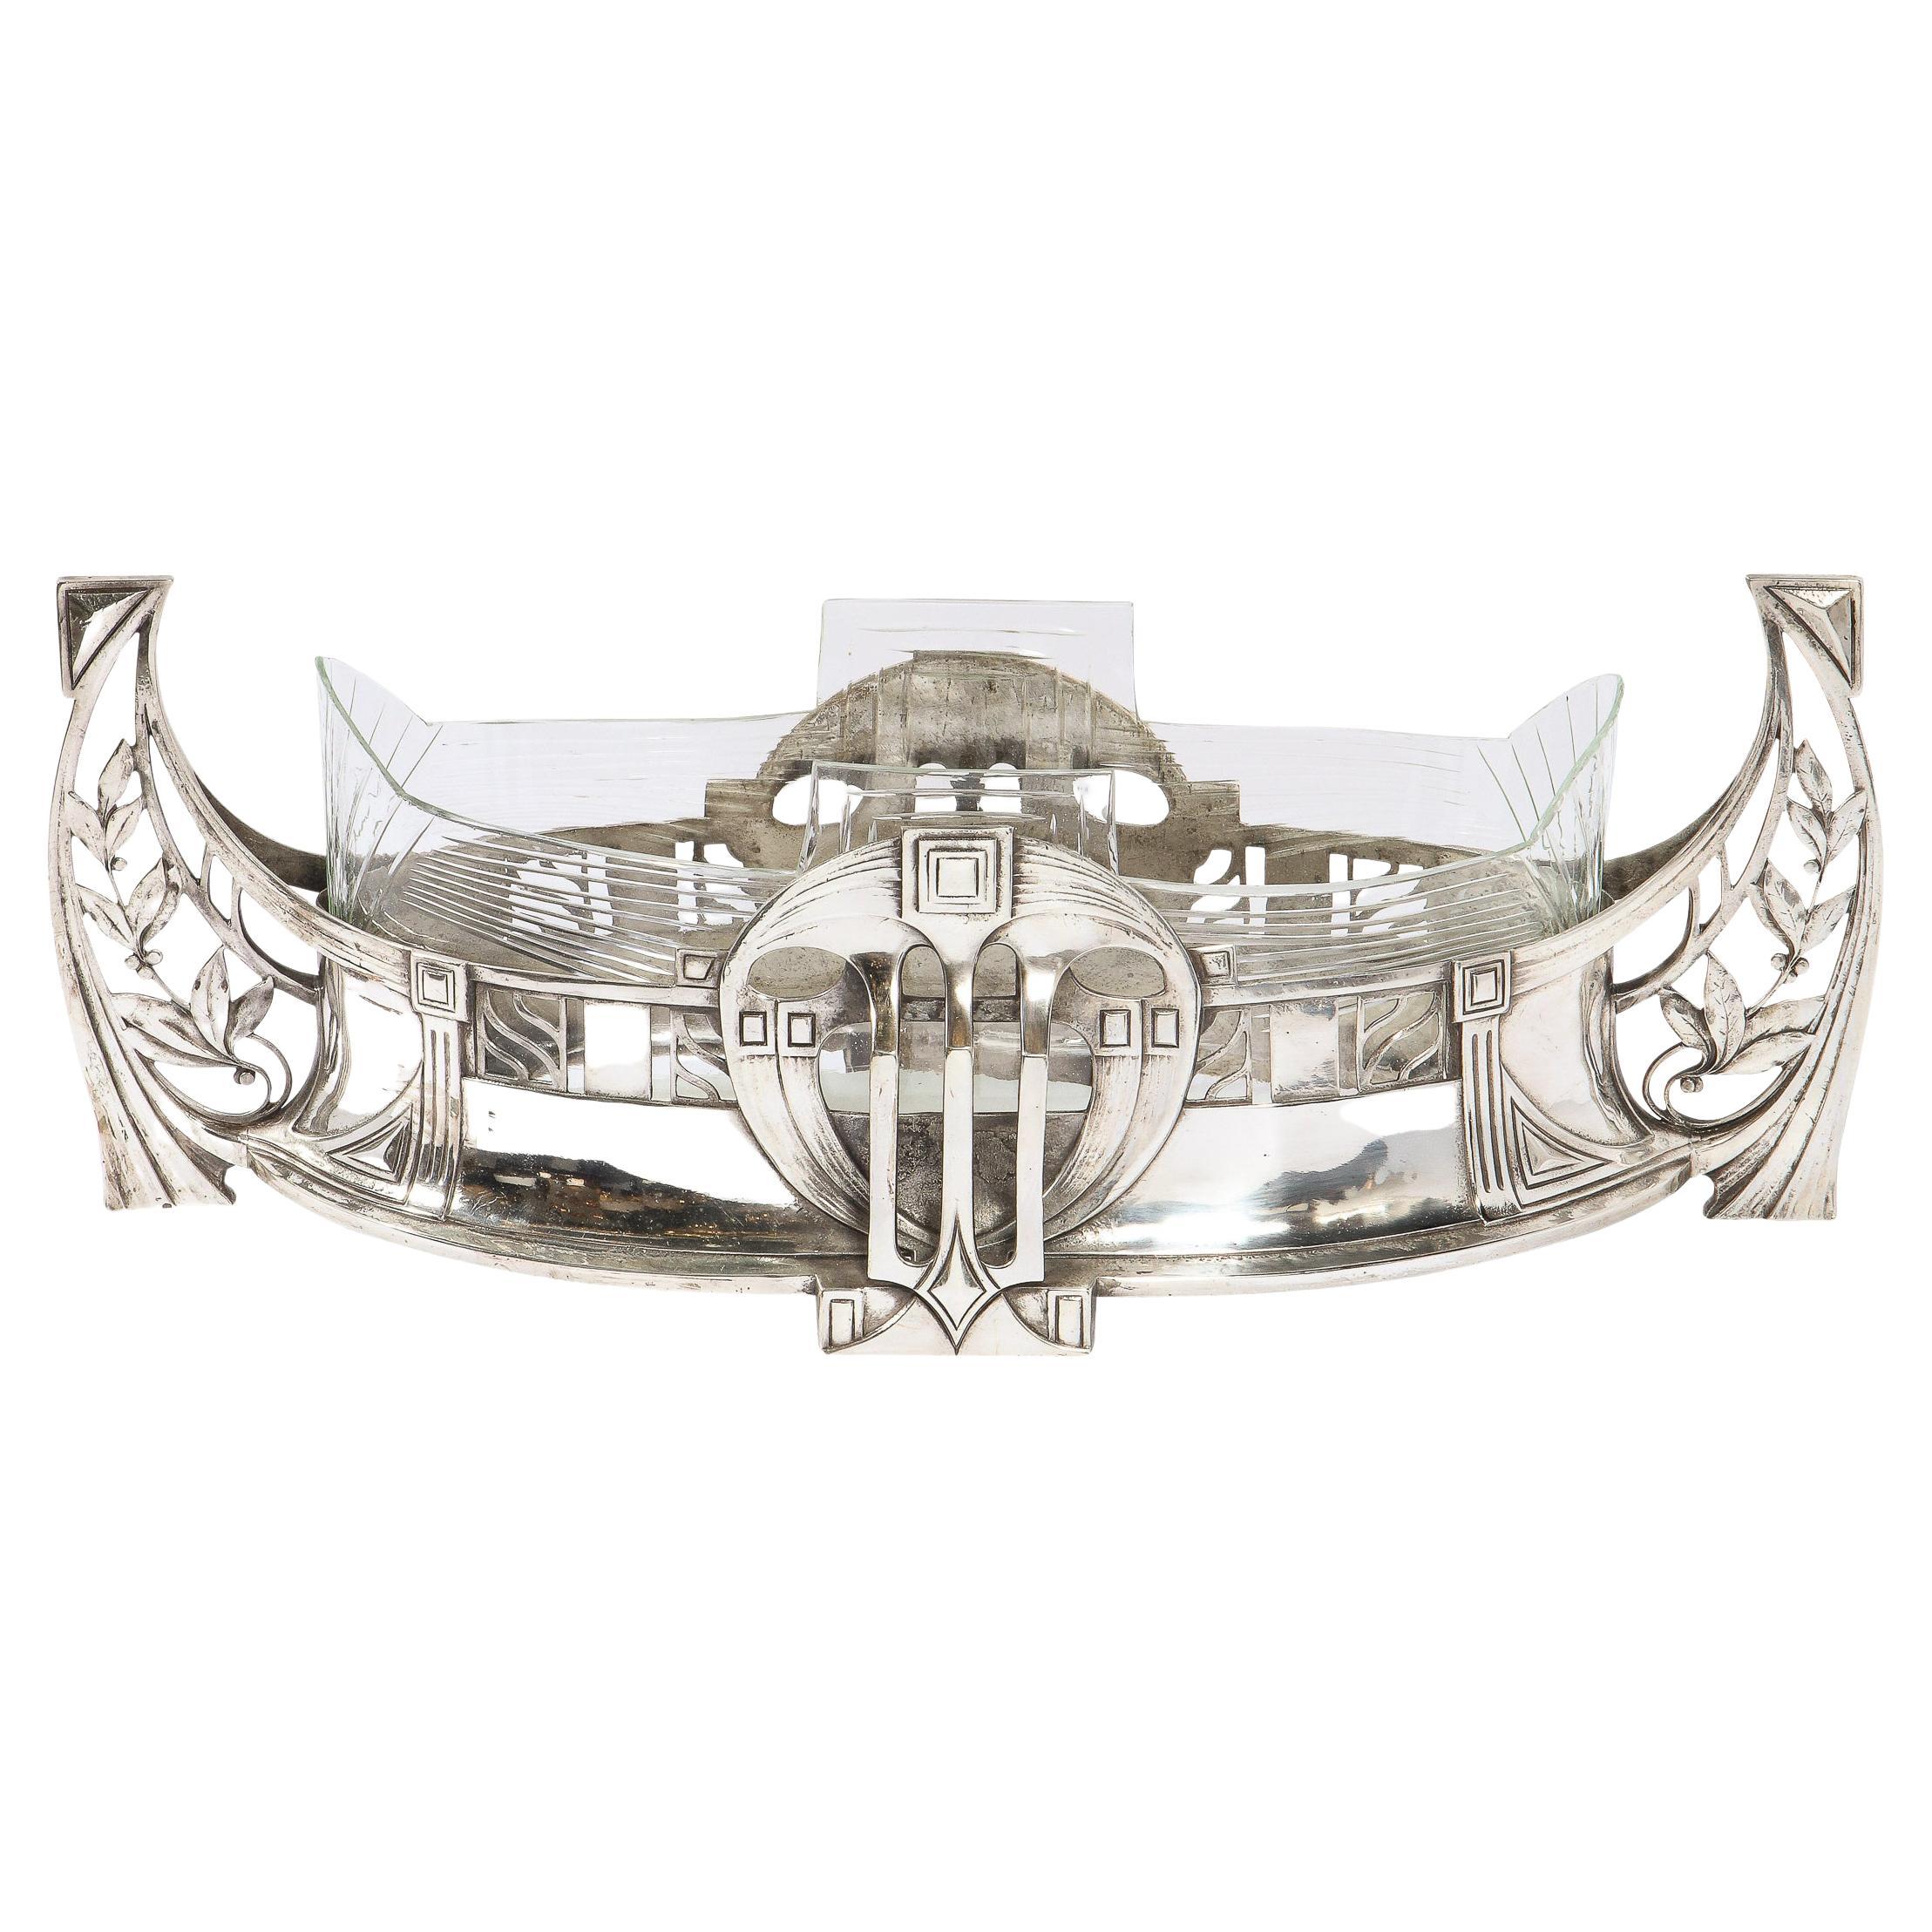 WMF Art Deco Sculptural Silverplate Centerpiece w/ Geometric & Foliate Motifs